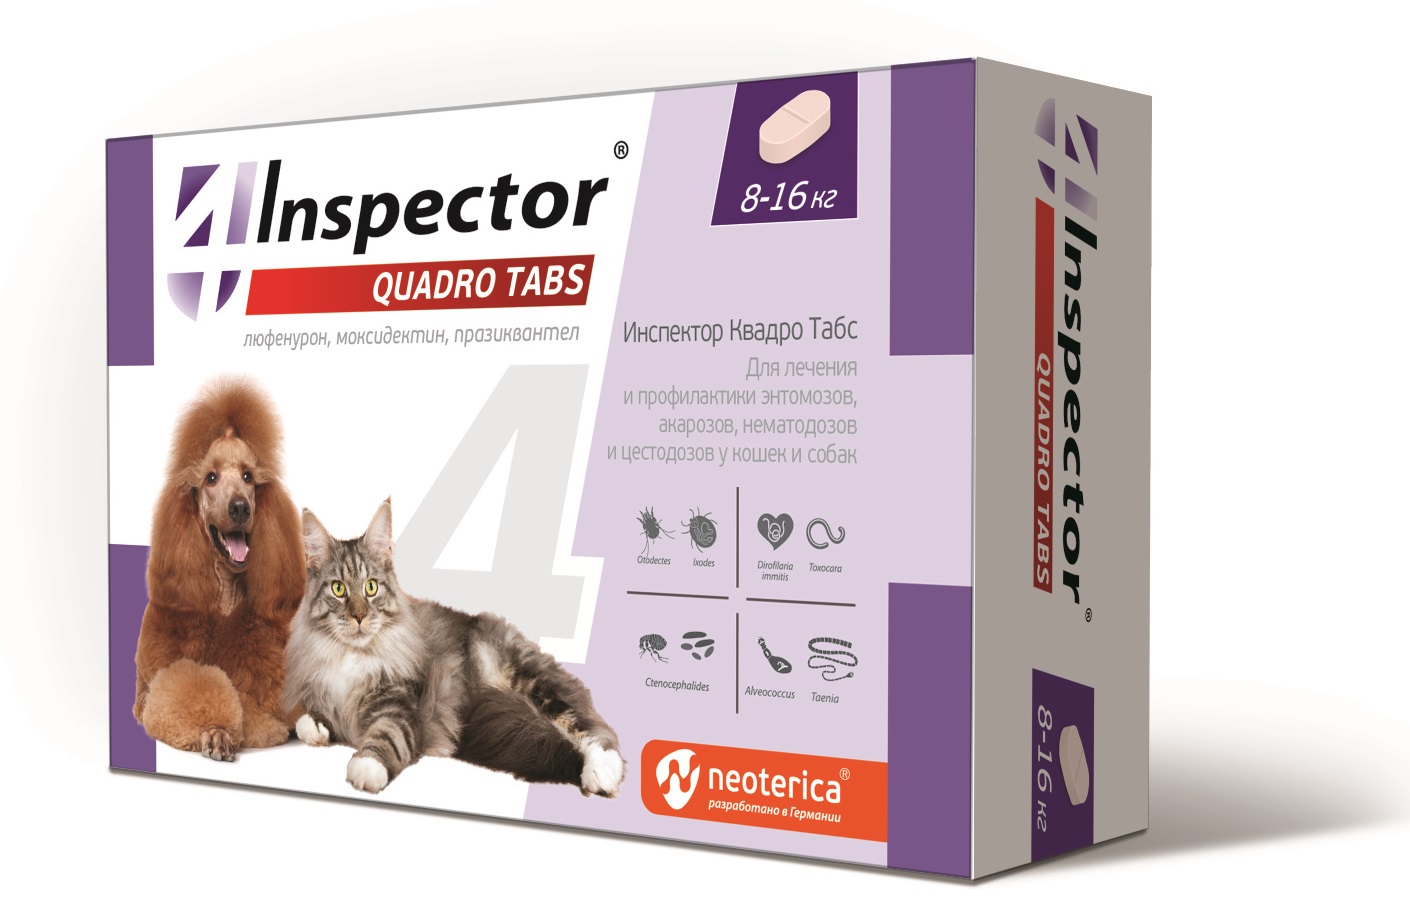 Inspector  Quadro Tabs  4таб для собак и кошек от блох и клещей  8-16кг  фото, цены, купить